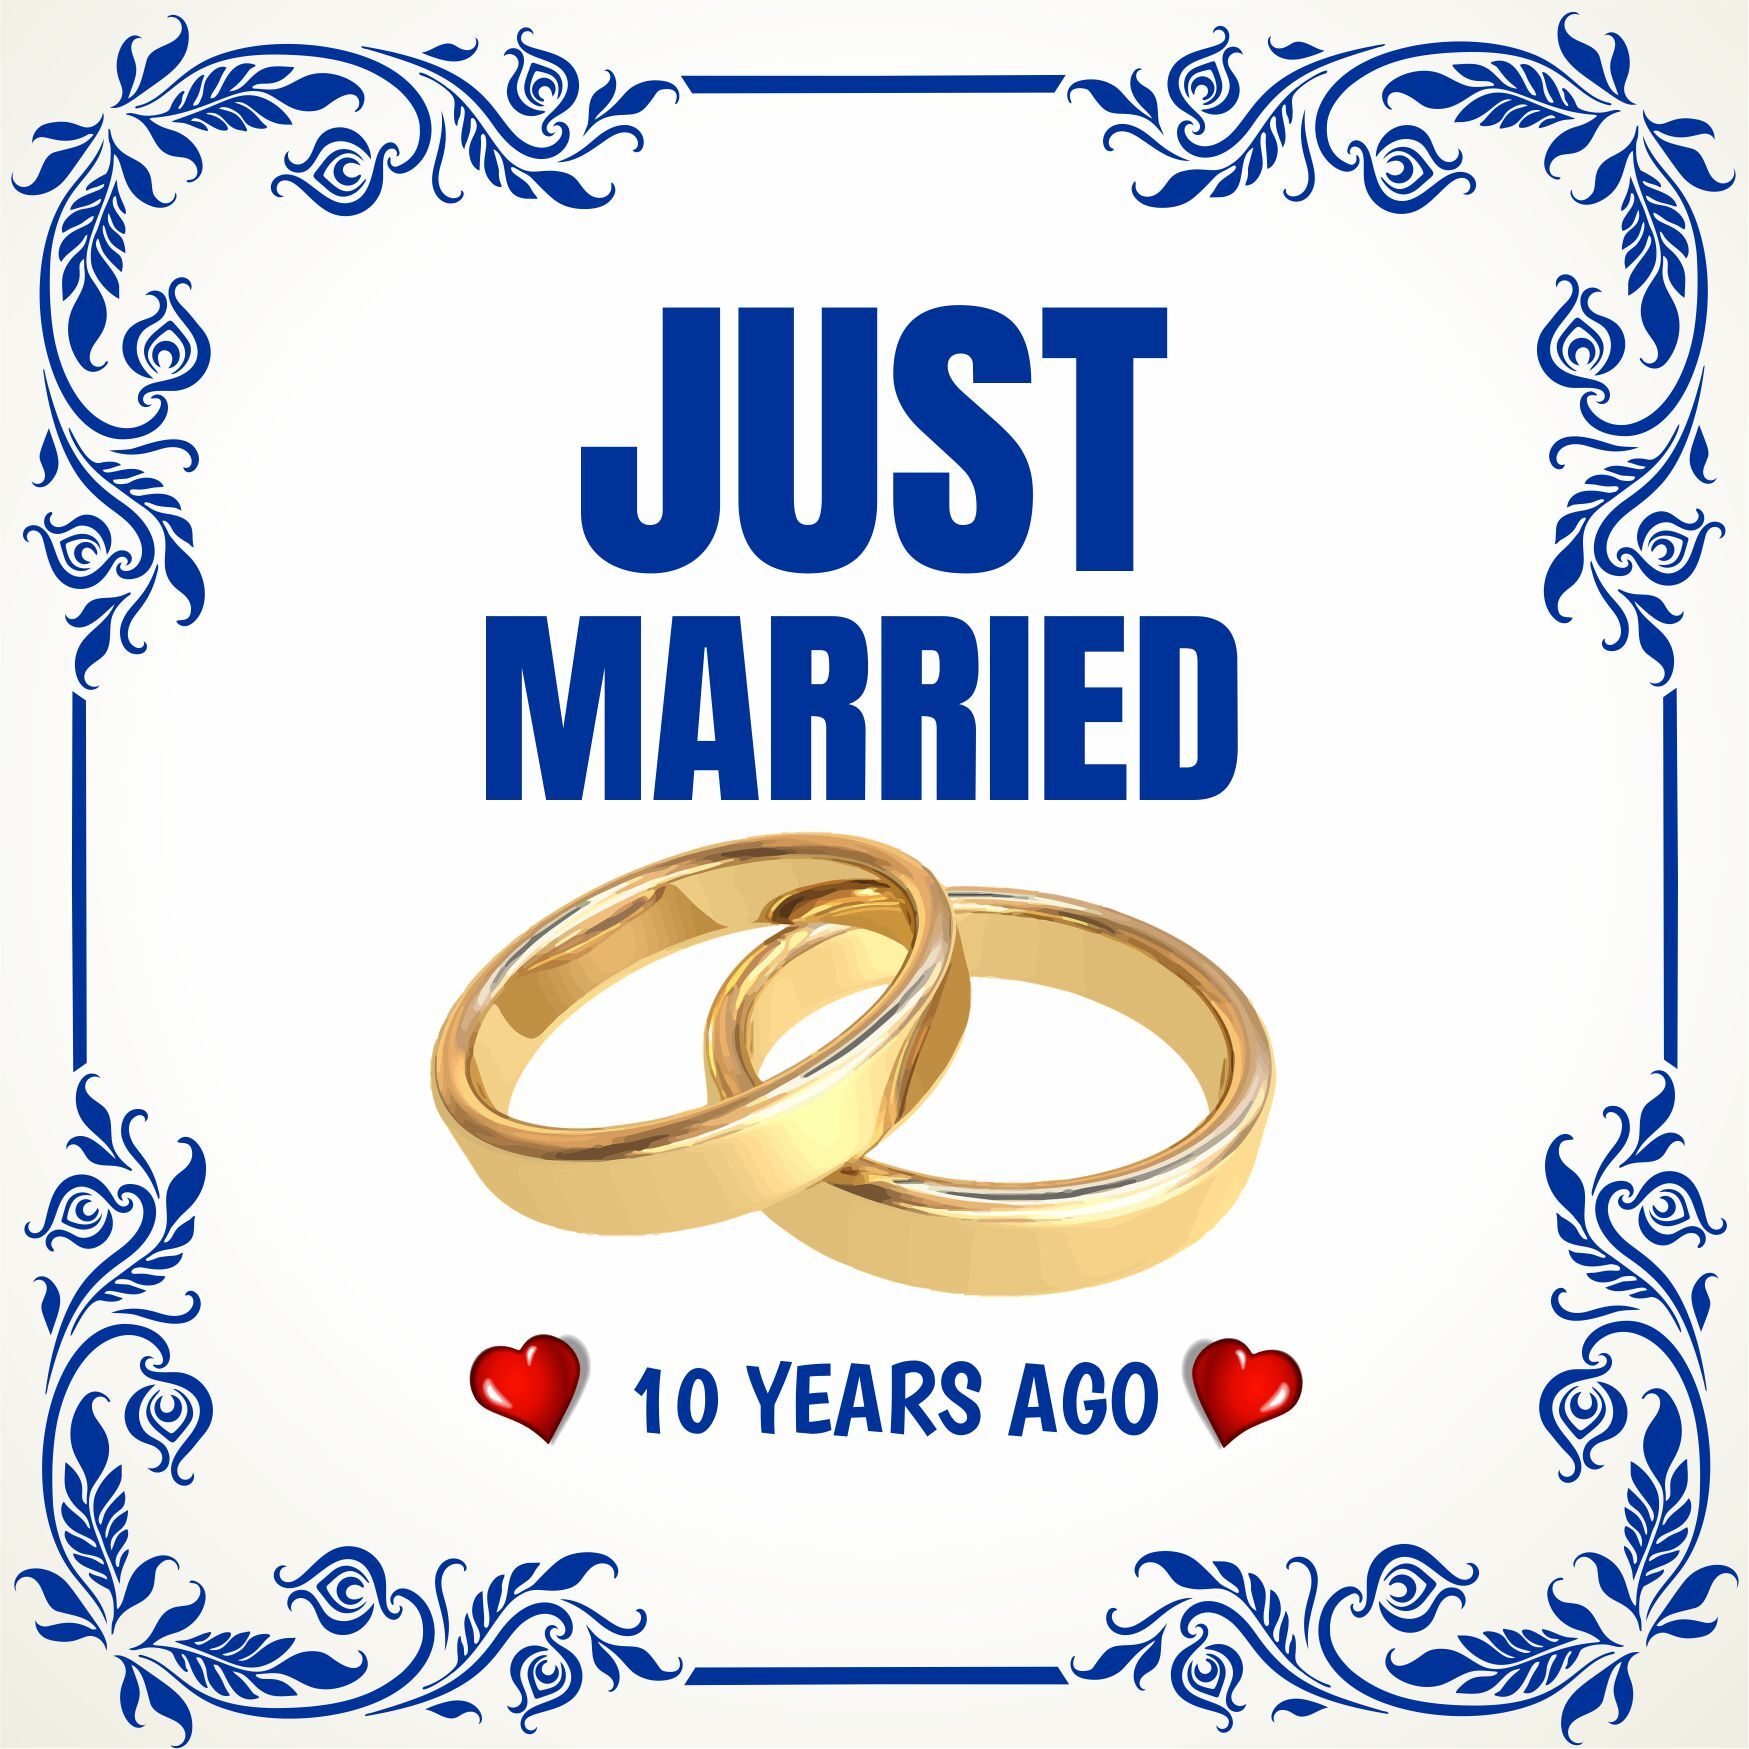 Tegel just married 10 years ago pas getrouwd 10 jaar geleden